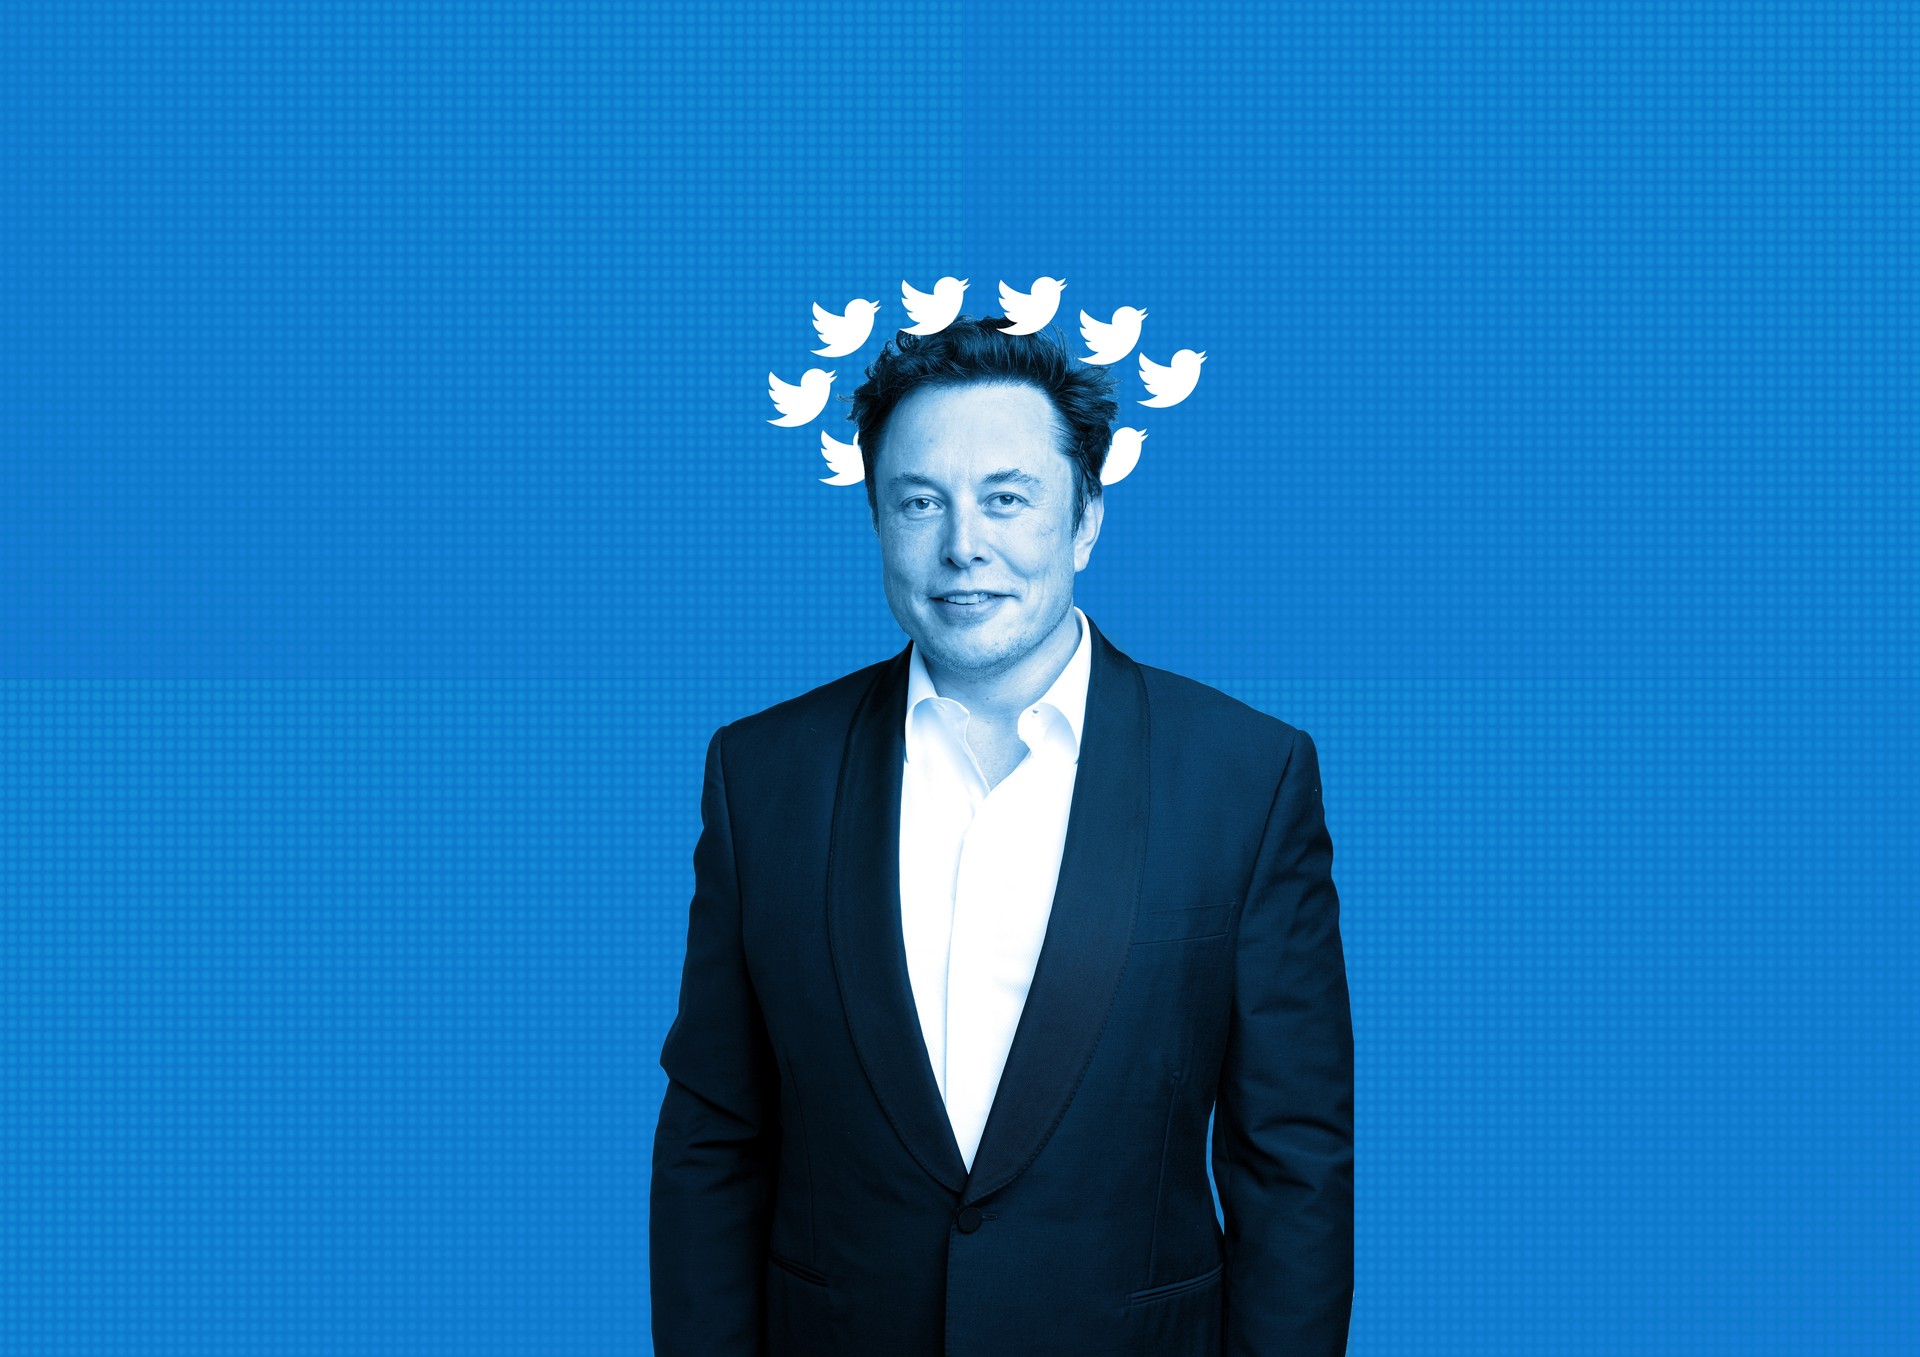 Qui pour contrôler l’incontrôlable Elon Musk ?